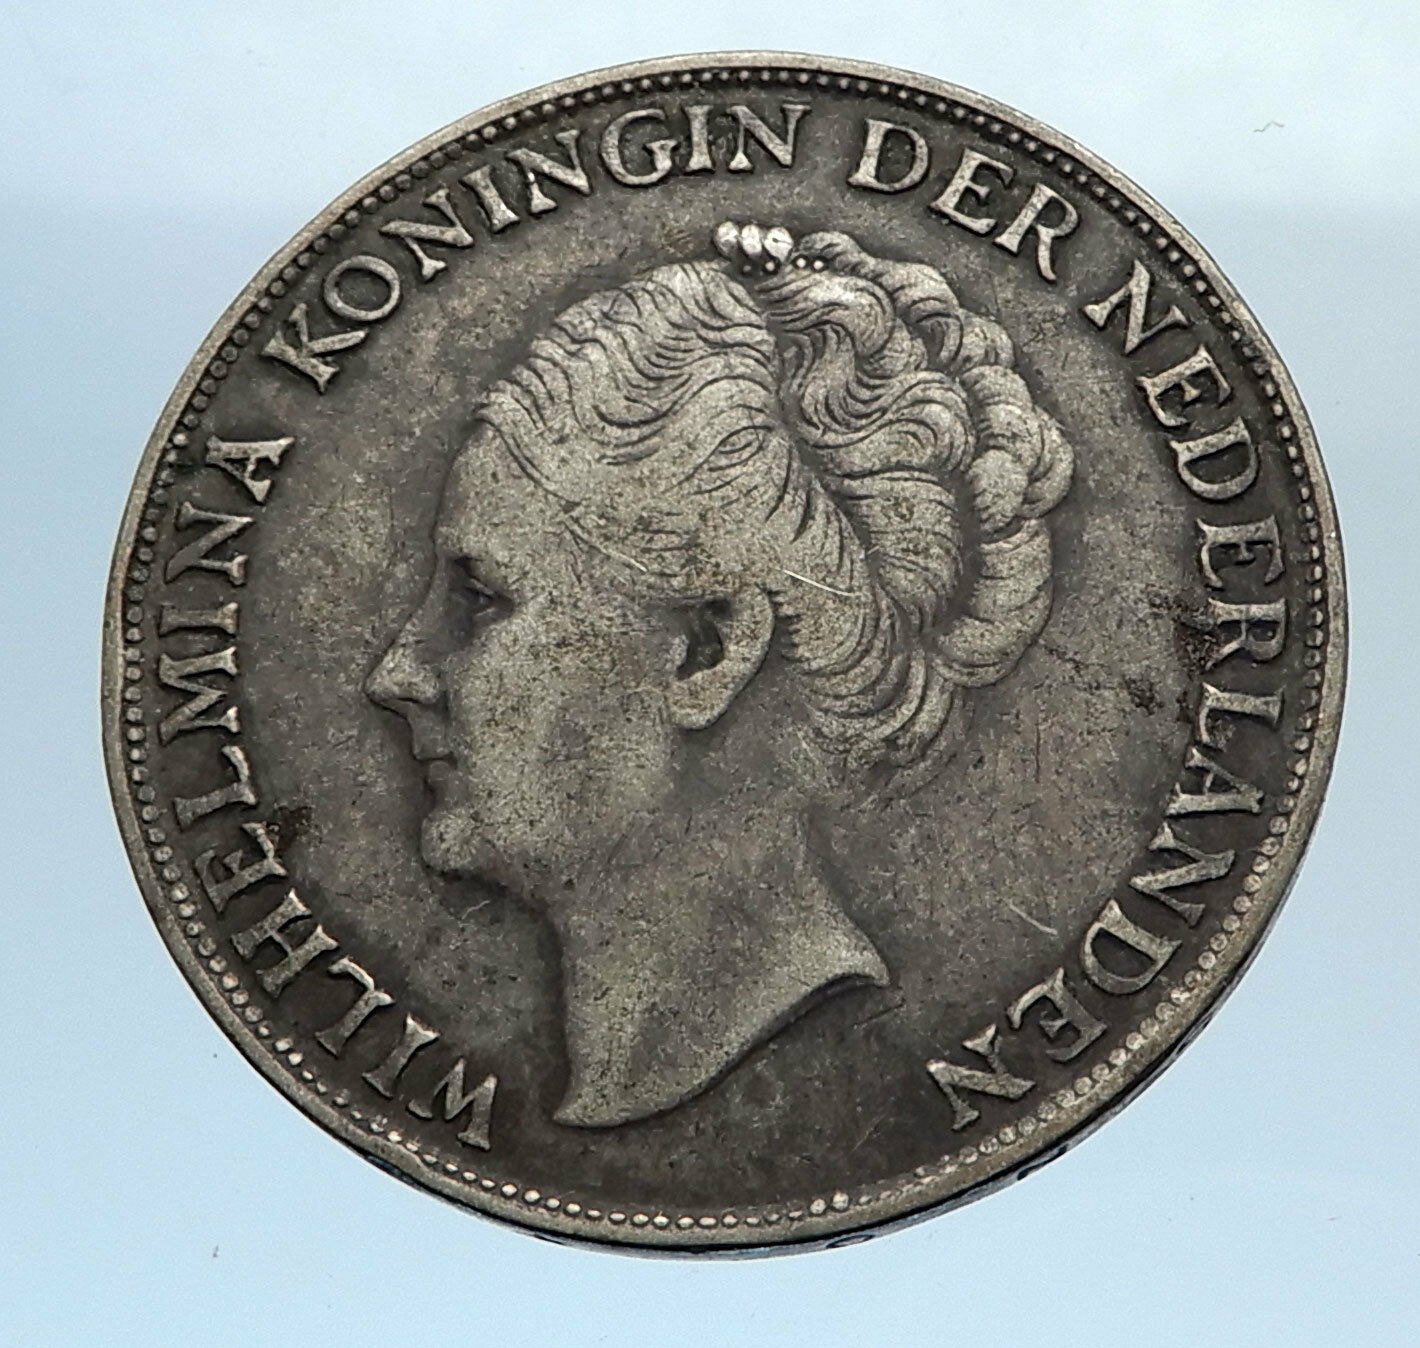 1944 CURACAO Netherlands Kingdom w Queen WILHELMINA Silver 1 Gulden Coin i71595